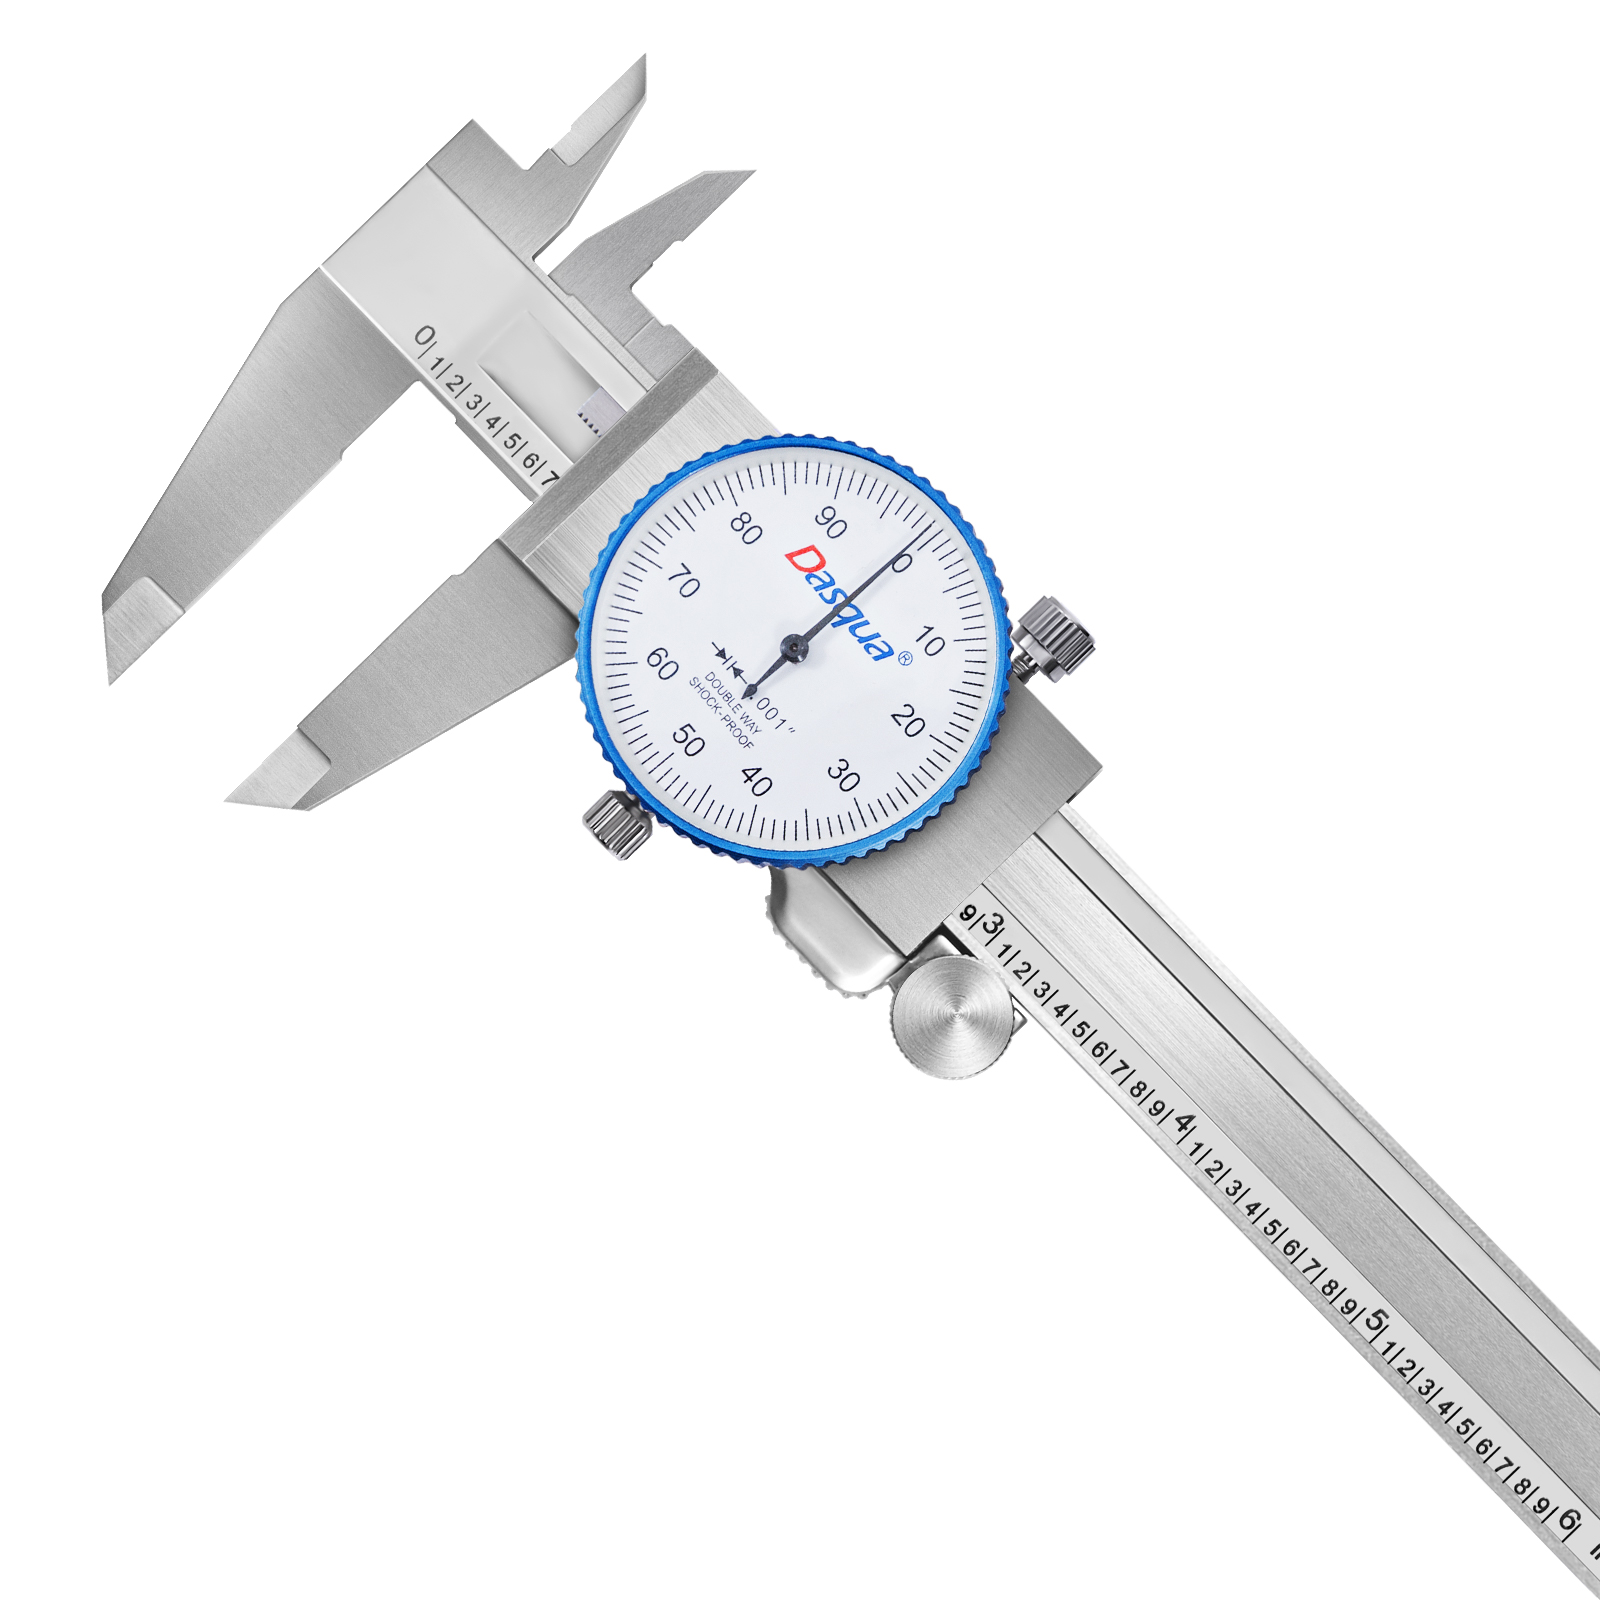 Dasqua 1331-2115-A Calibrador de dial doble a prueba de golpes Pro monobloque de alta precisión con rango de 0-150 mm, precisión de ±0,015 mm